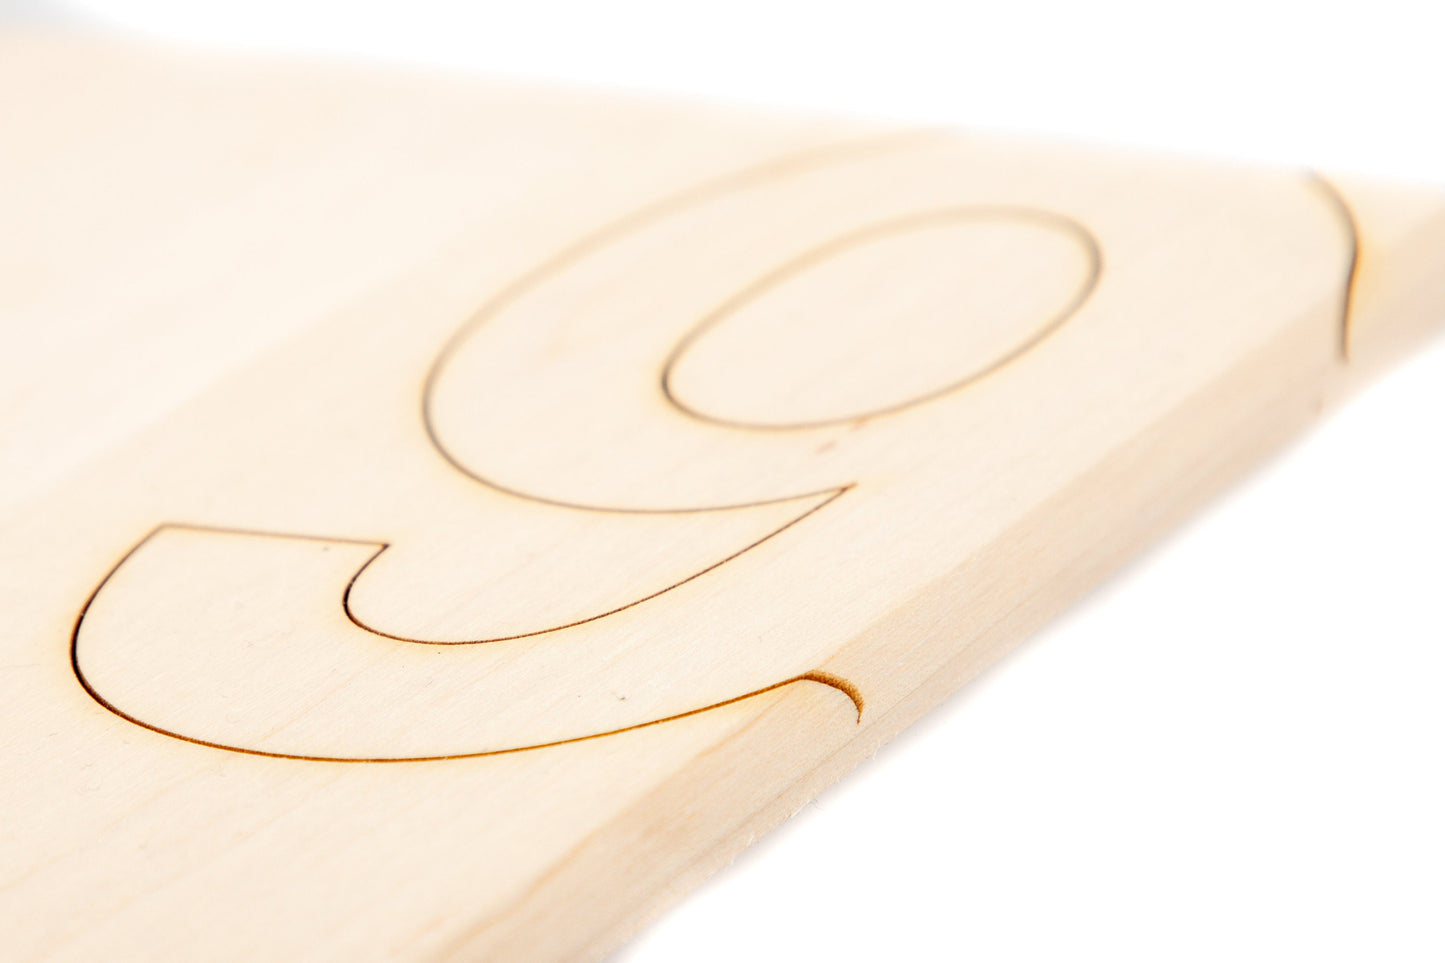 Türschild mit personalisierbarer Gravur - Holz - mit Hausnummer